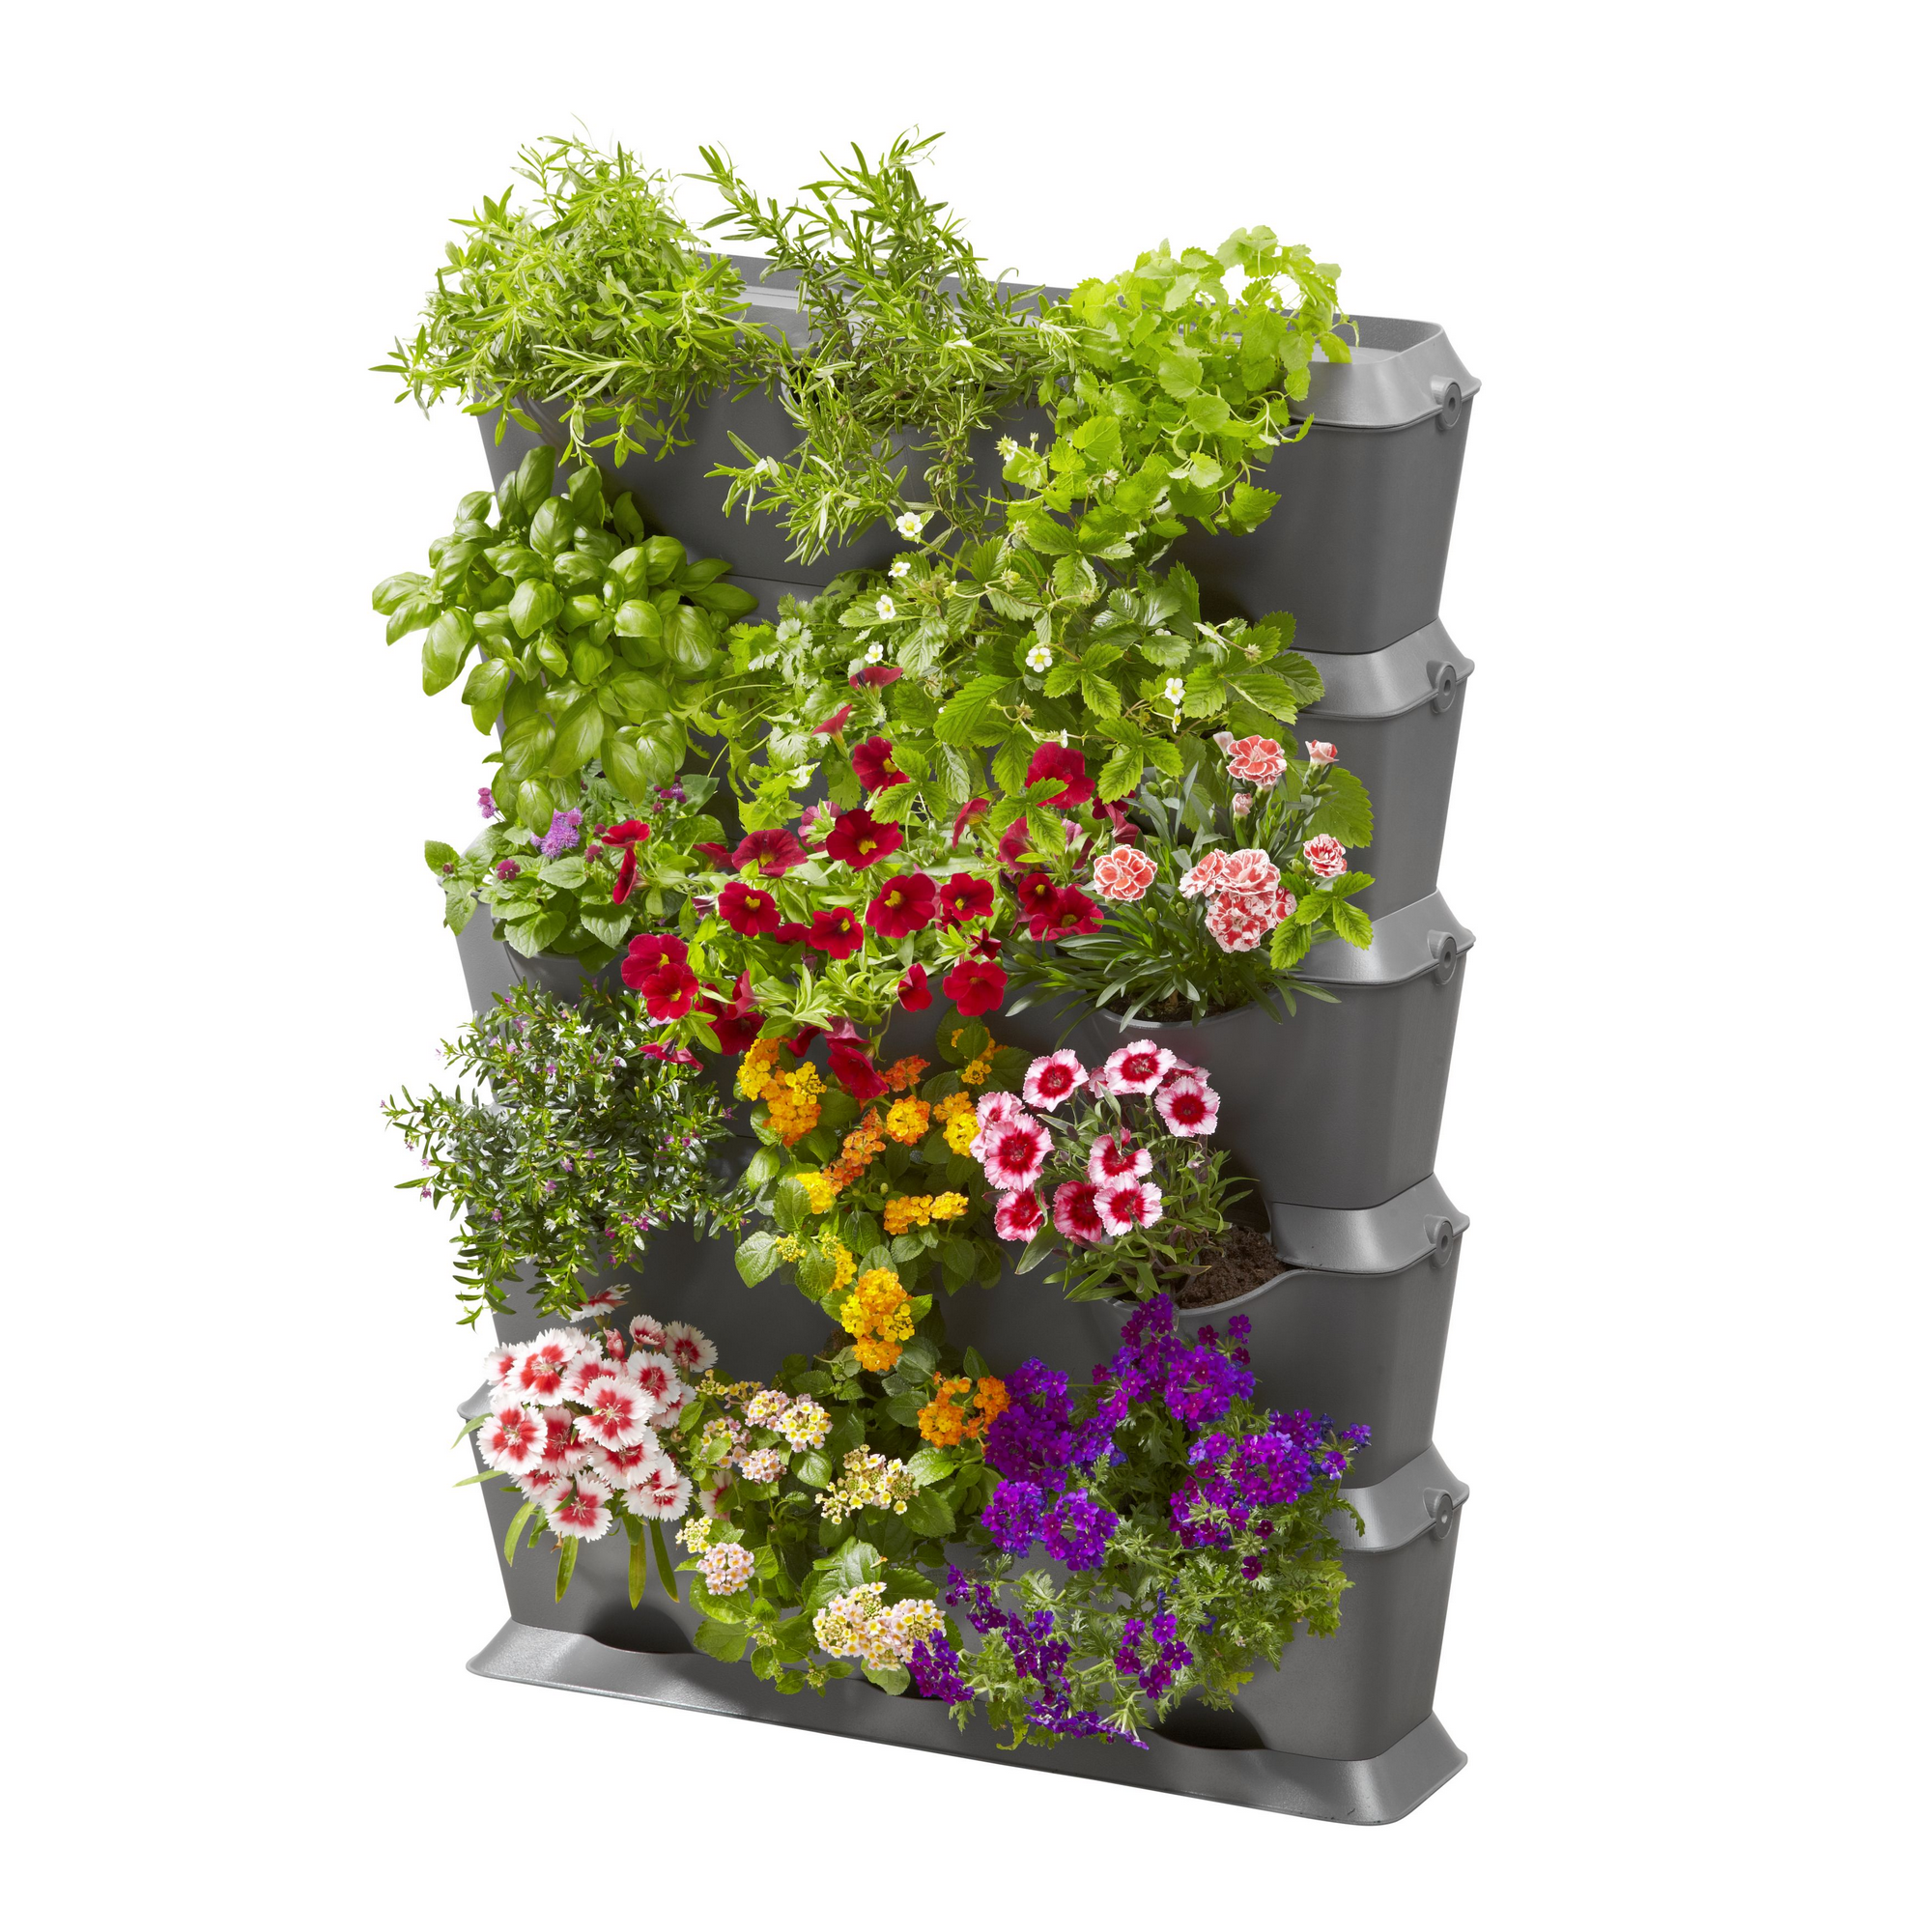 Pflanzbehälter 'NatureUp!' vertikal inkl. Bewässerungsset + product picture